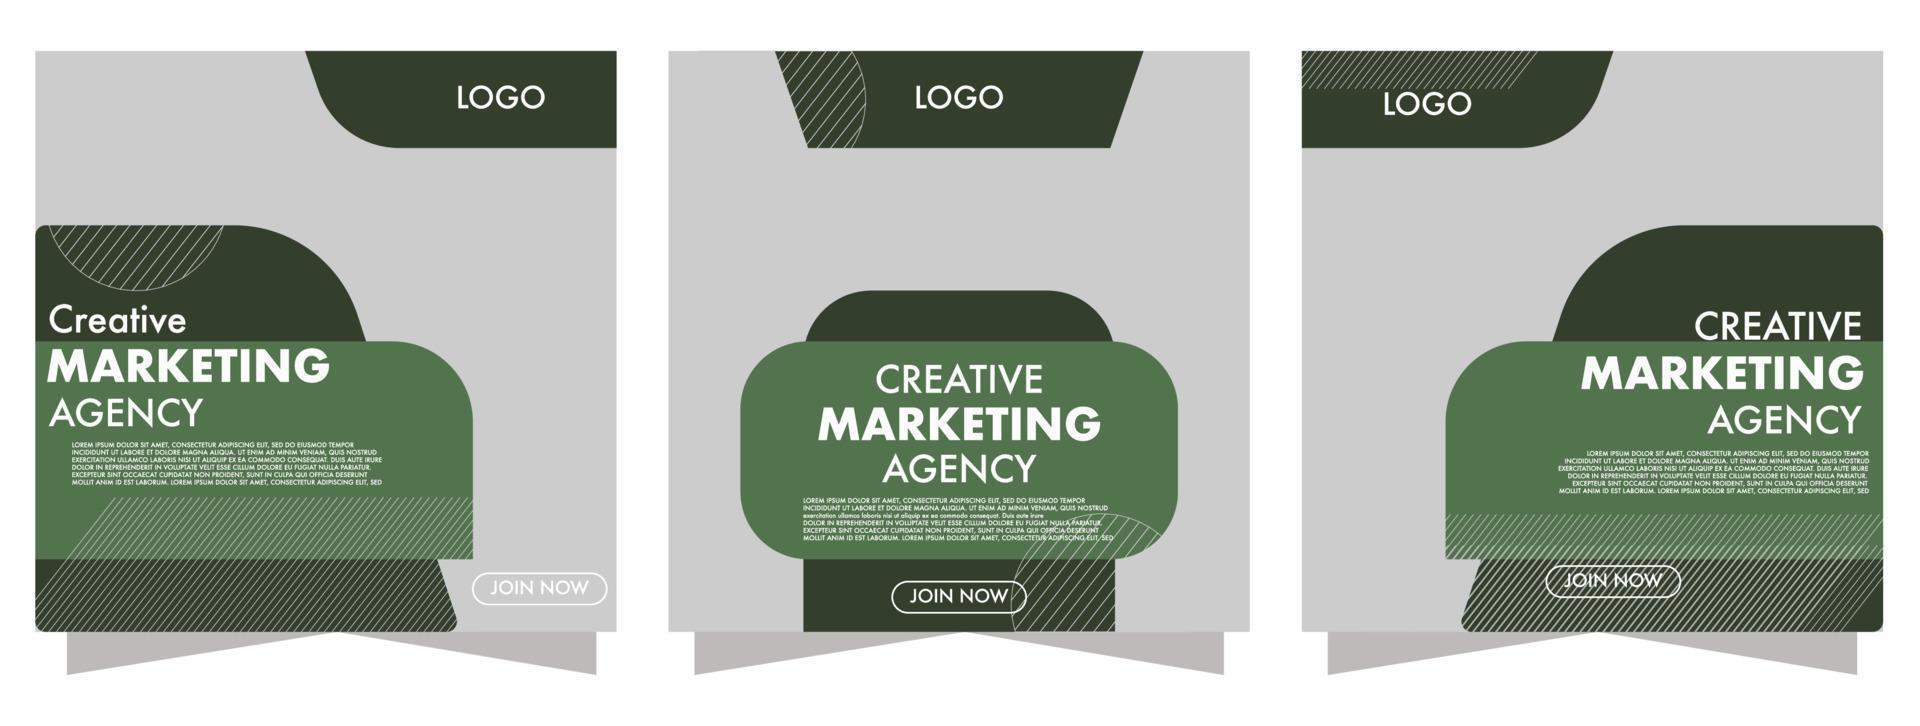 creative marketing agency post social media good for social media post vector